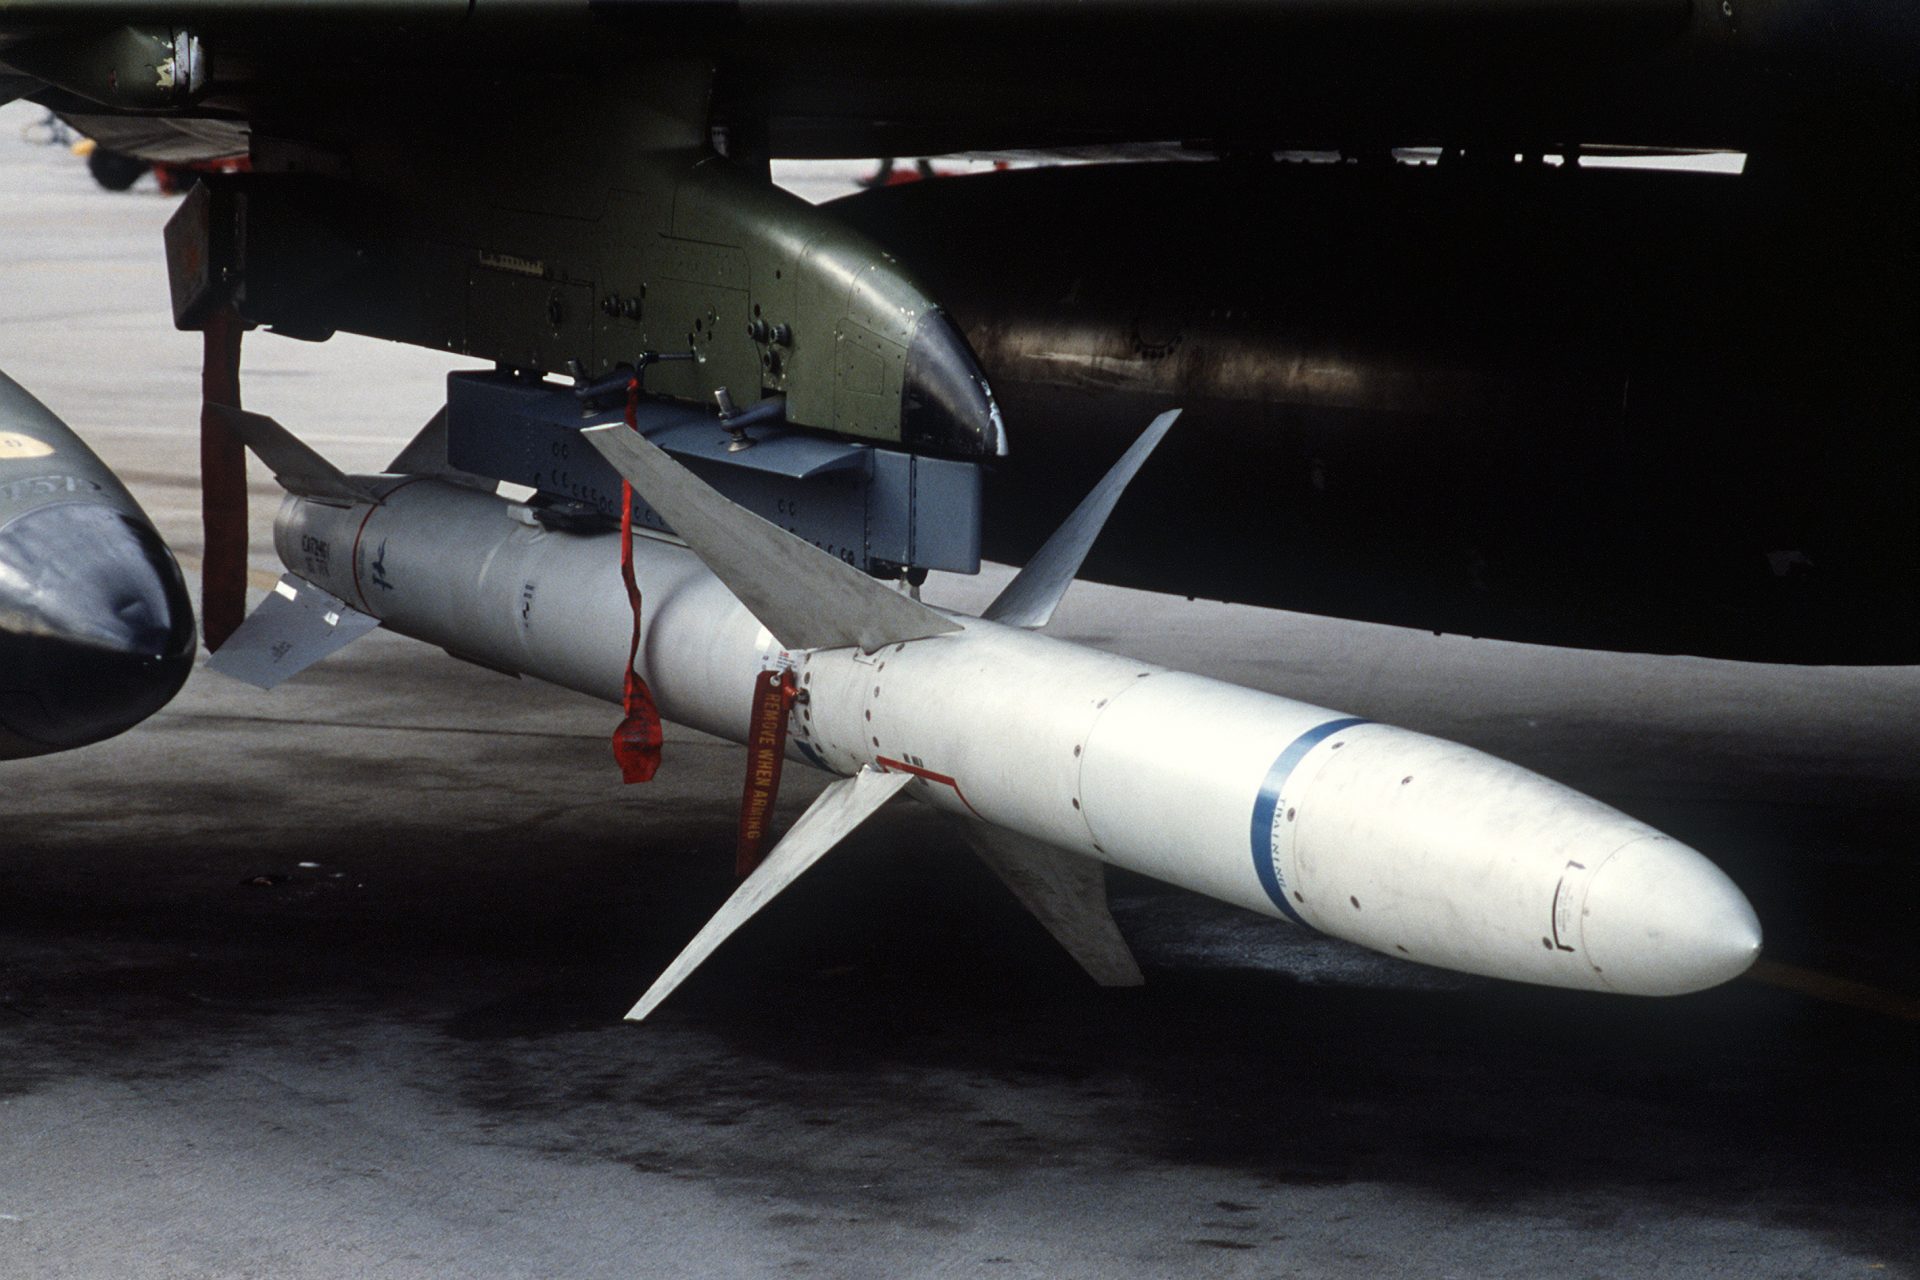 The AGM-88 HARM